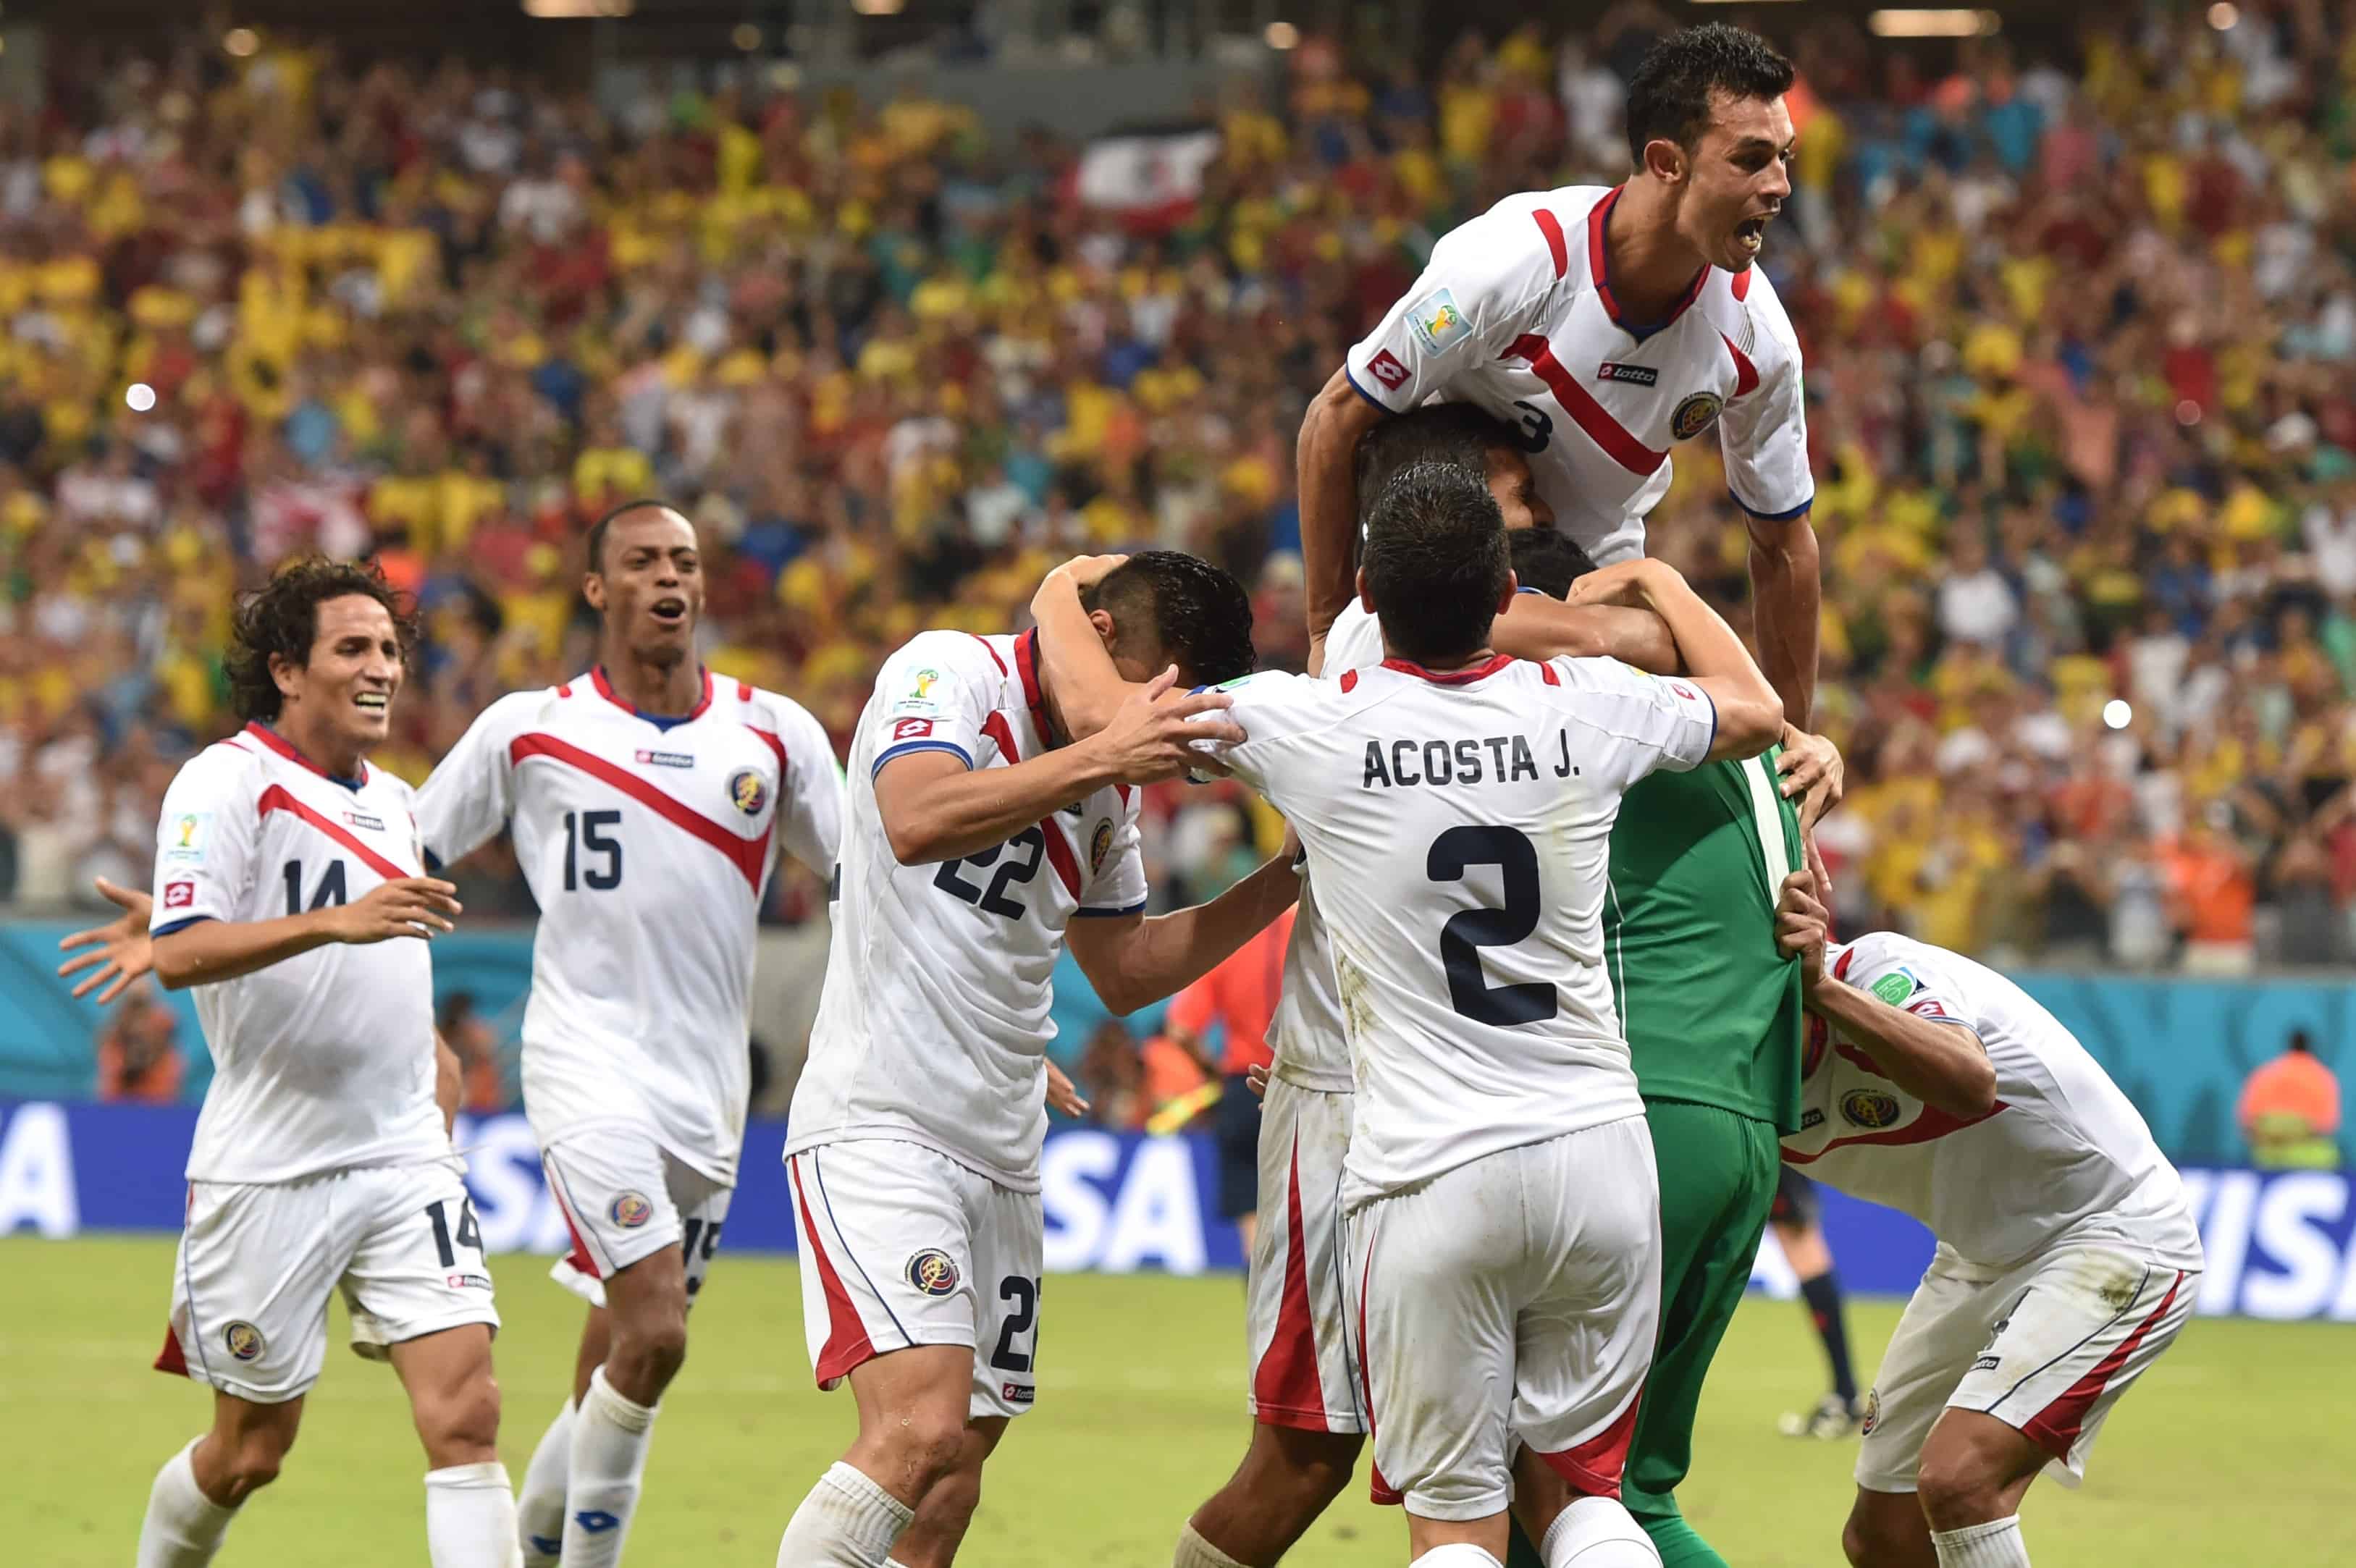 Na Copa do Mundo de 2014, a Costa Rica caiu em um grupo com Itália, Inglaterra e Uruguai. Se classificou junto com os uruguaios. Nas oitavas passou pela Grécia, mas perdeu as quartas de final para a Holanda nos pênaltis.